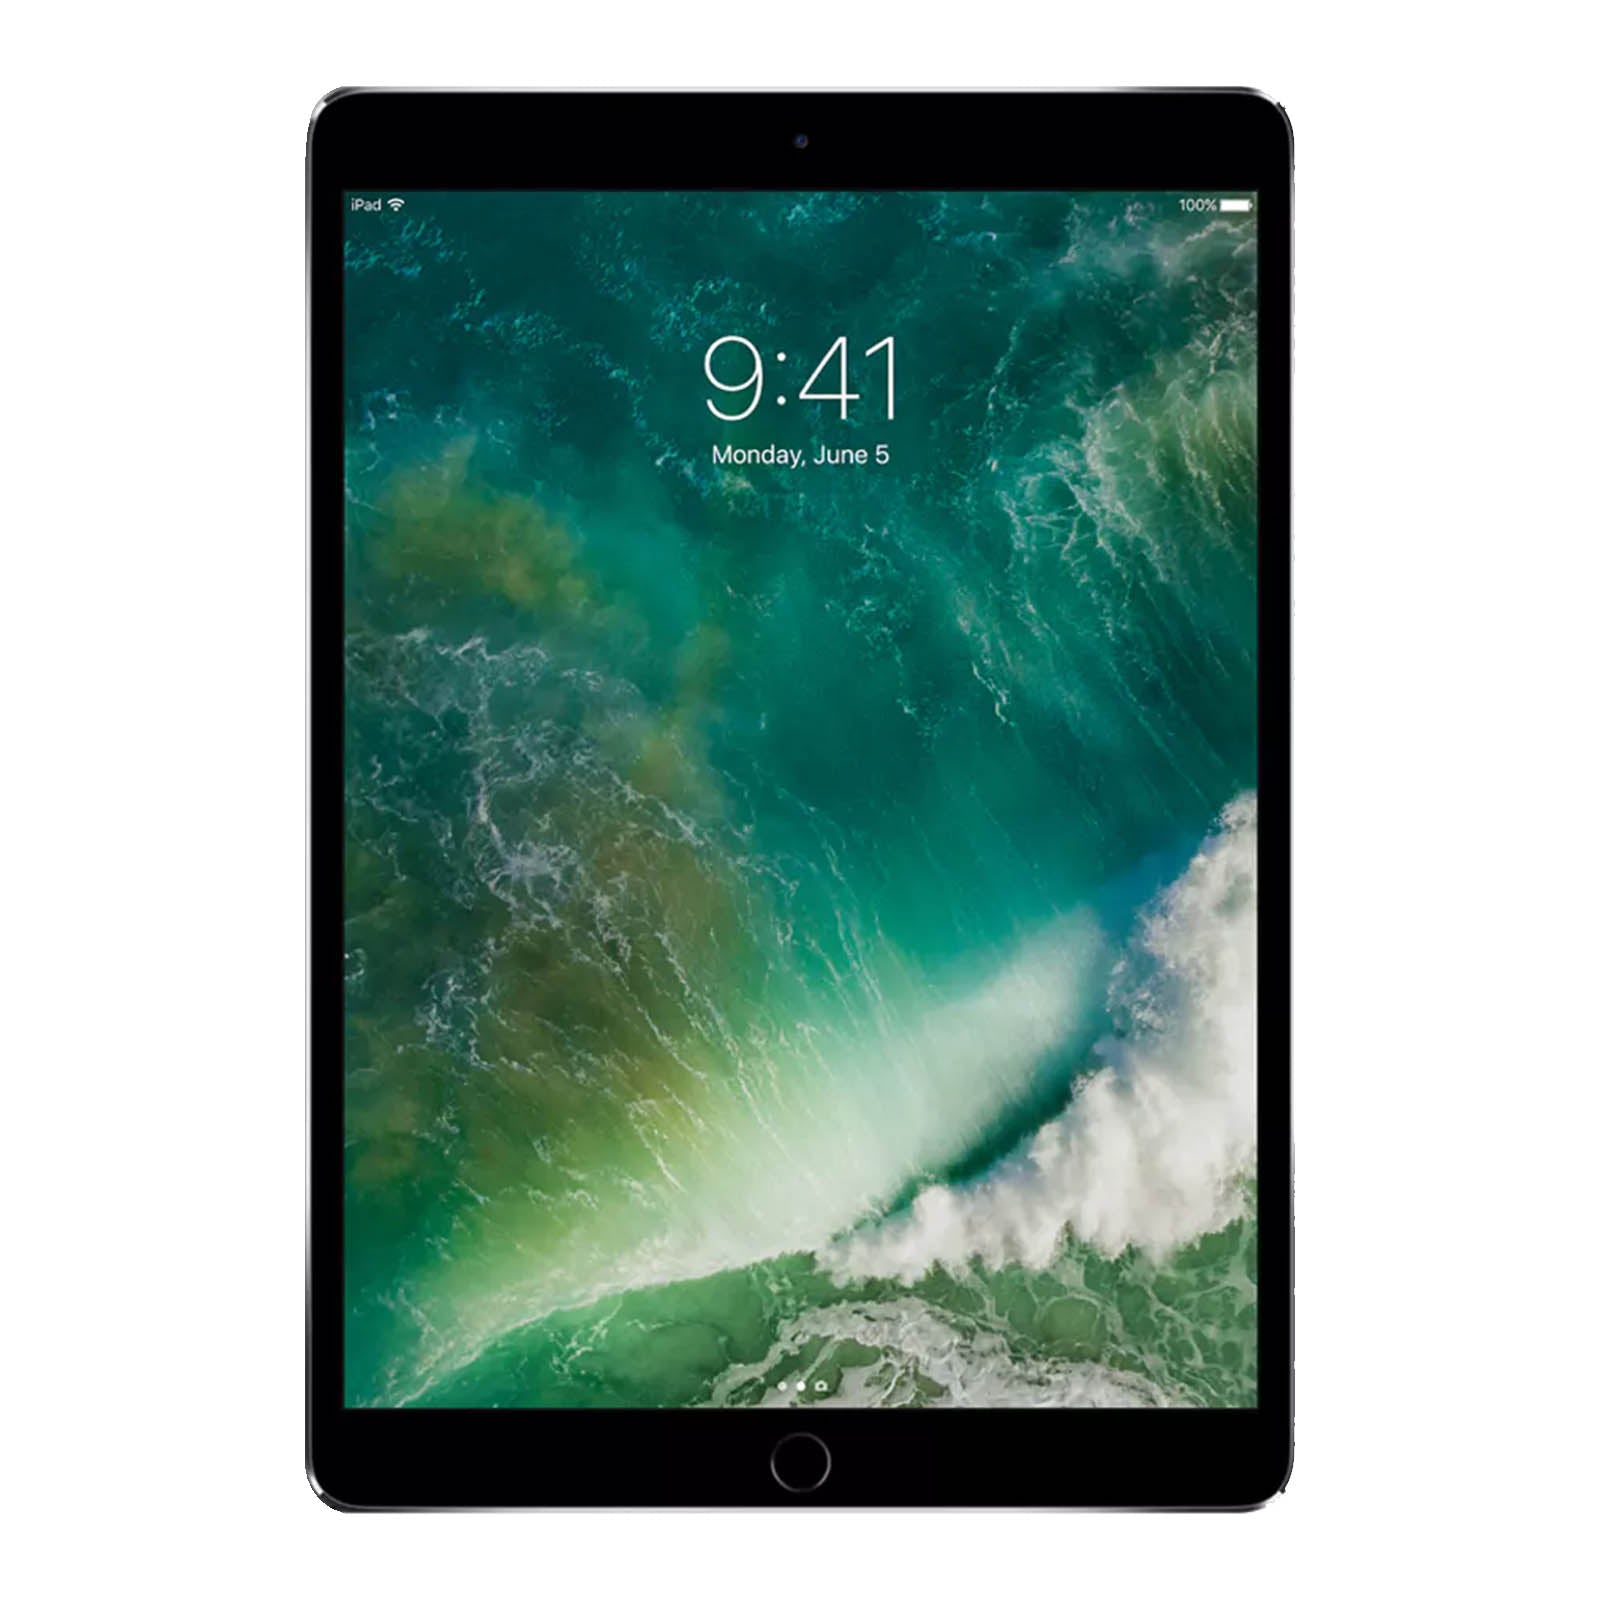 Apple iPad Pro 10.5" 256GB Space Grey - WiFi